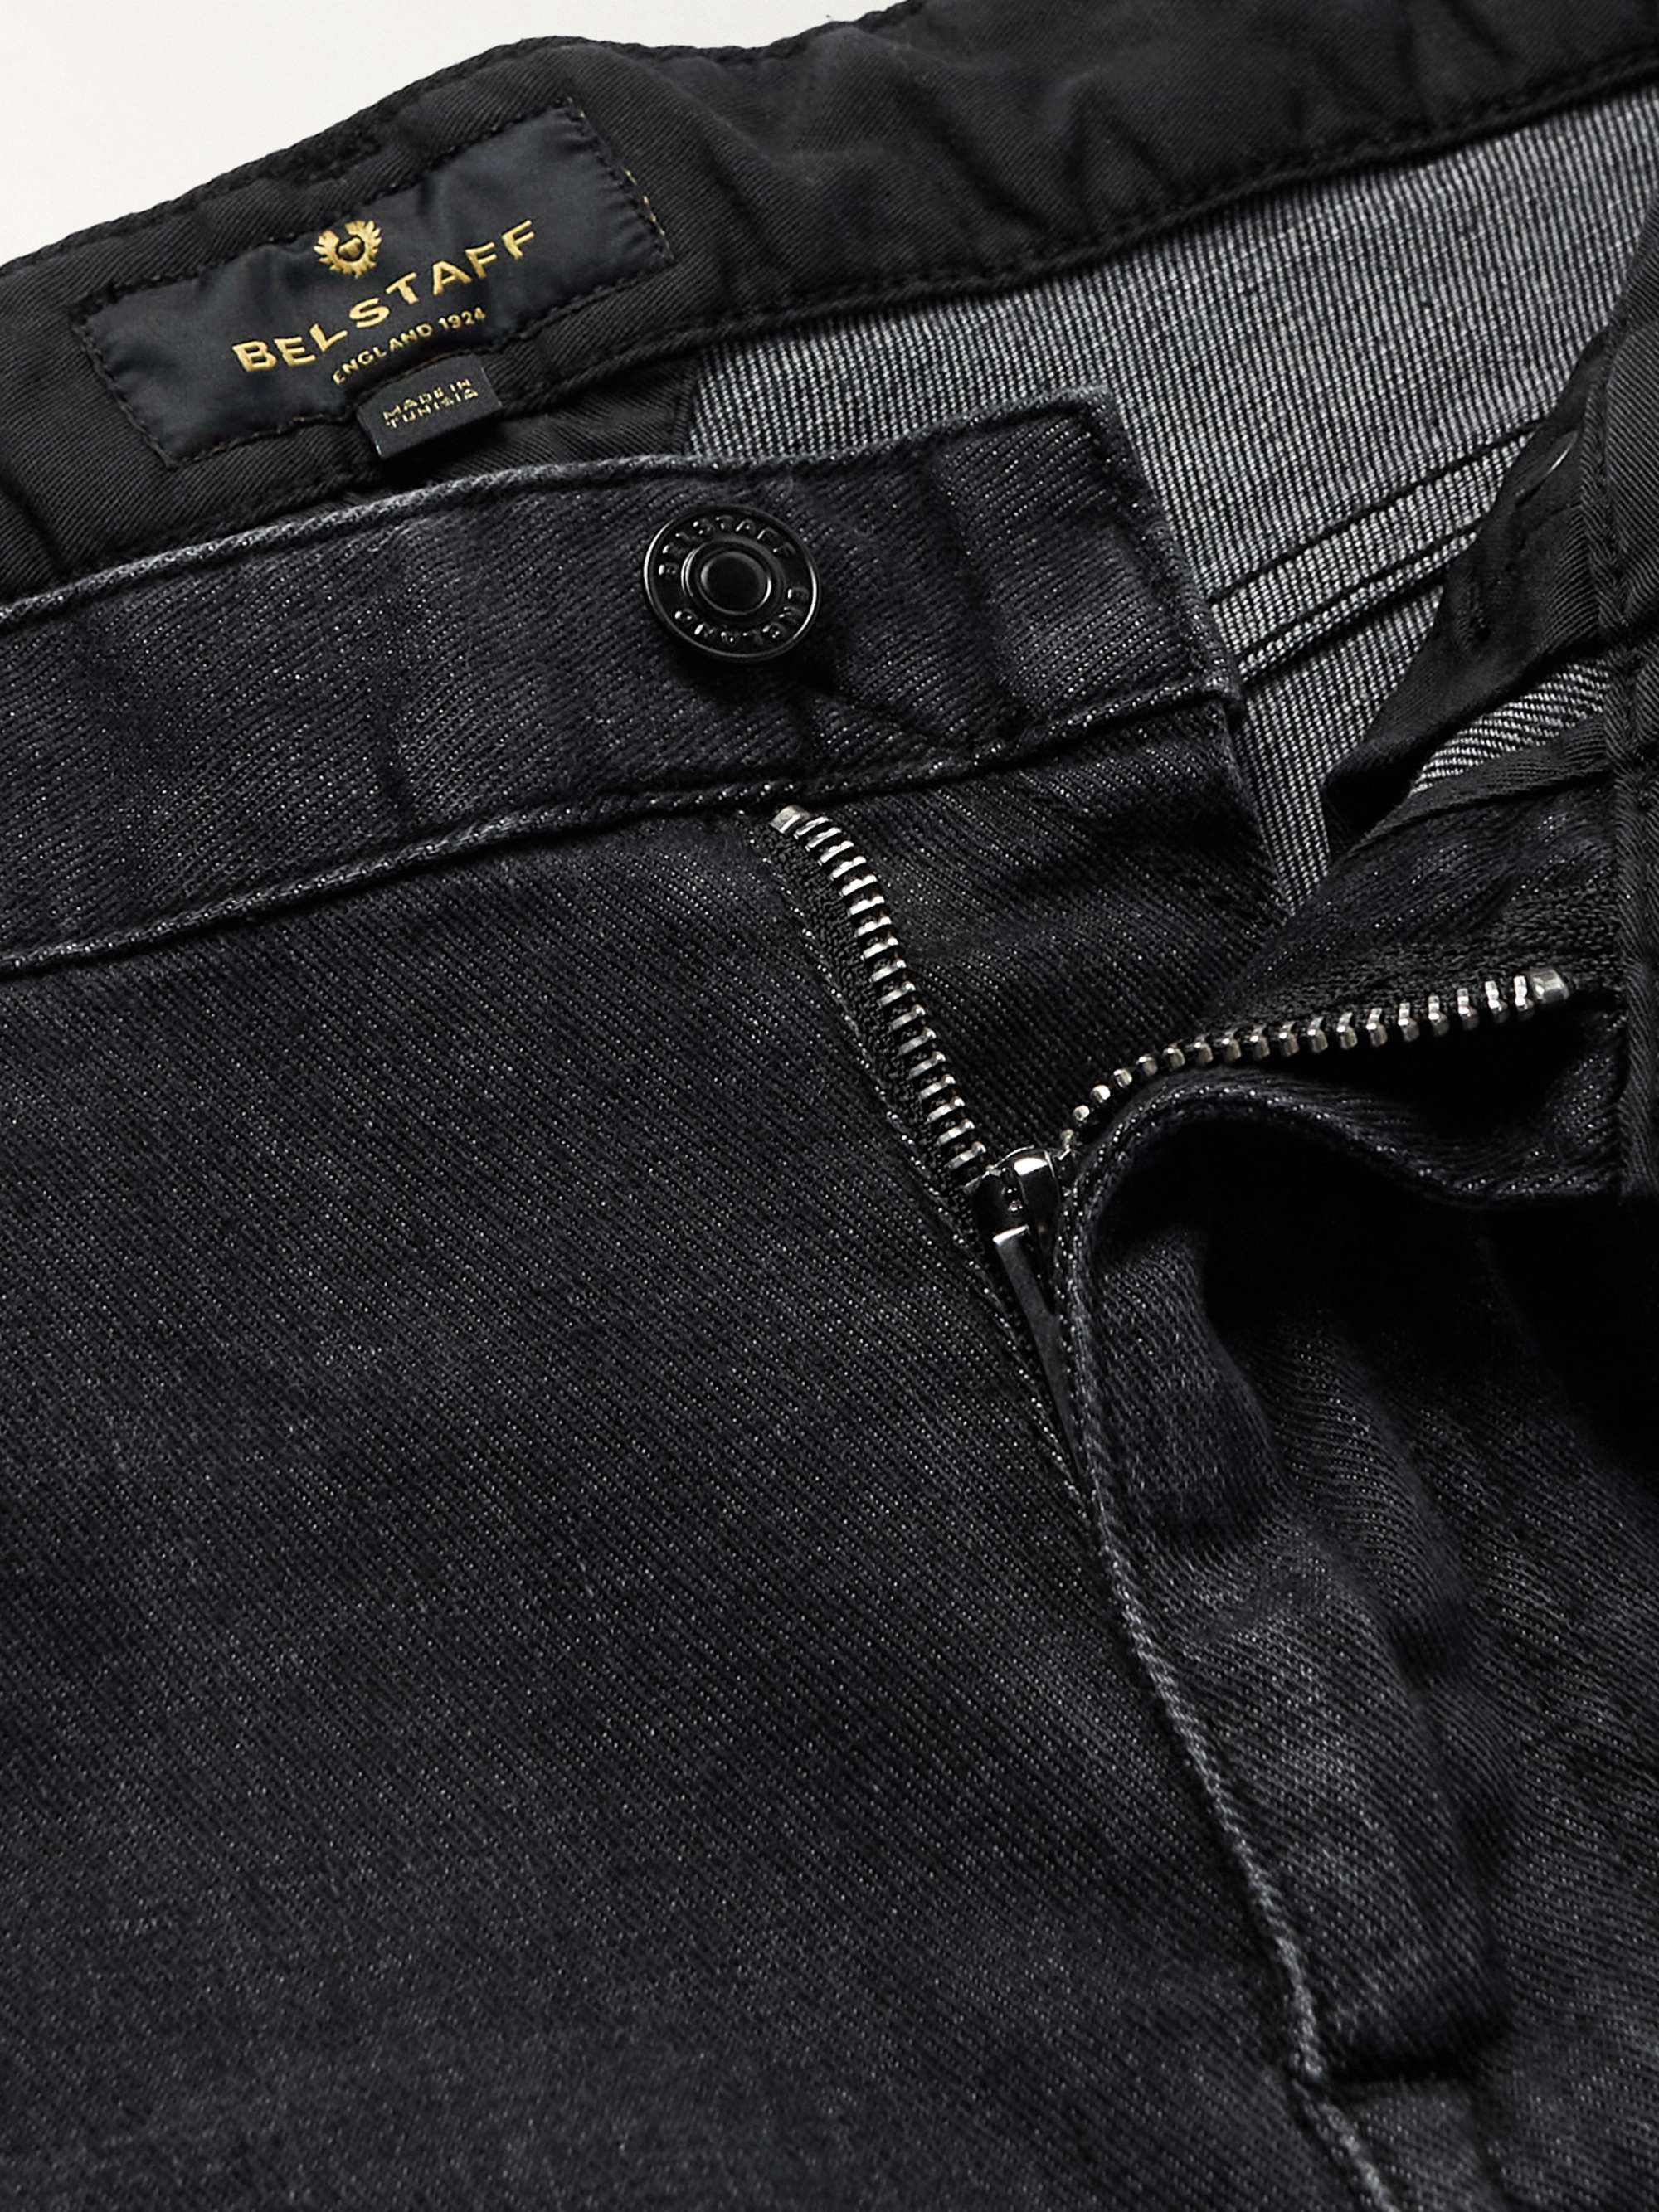 BELSTAFF Slim-Fit Washed Straight-Leg Jeans for Men | MR PORTER